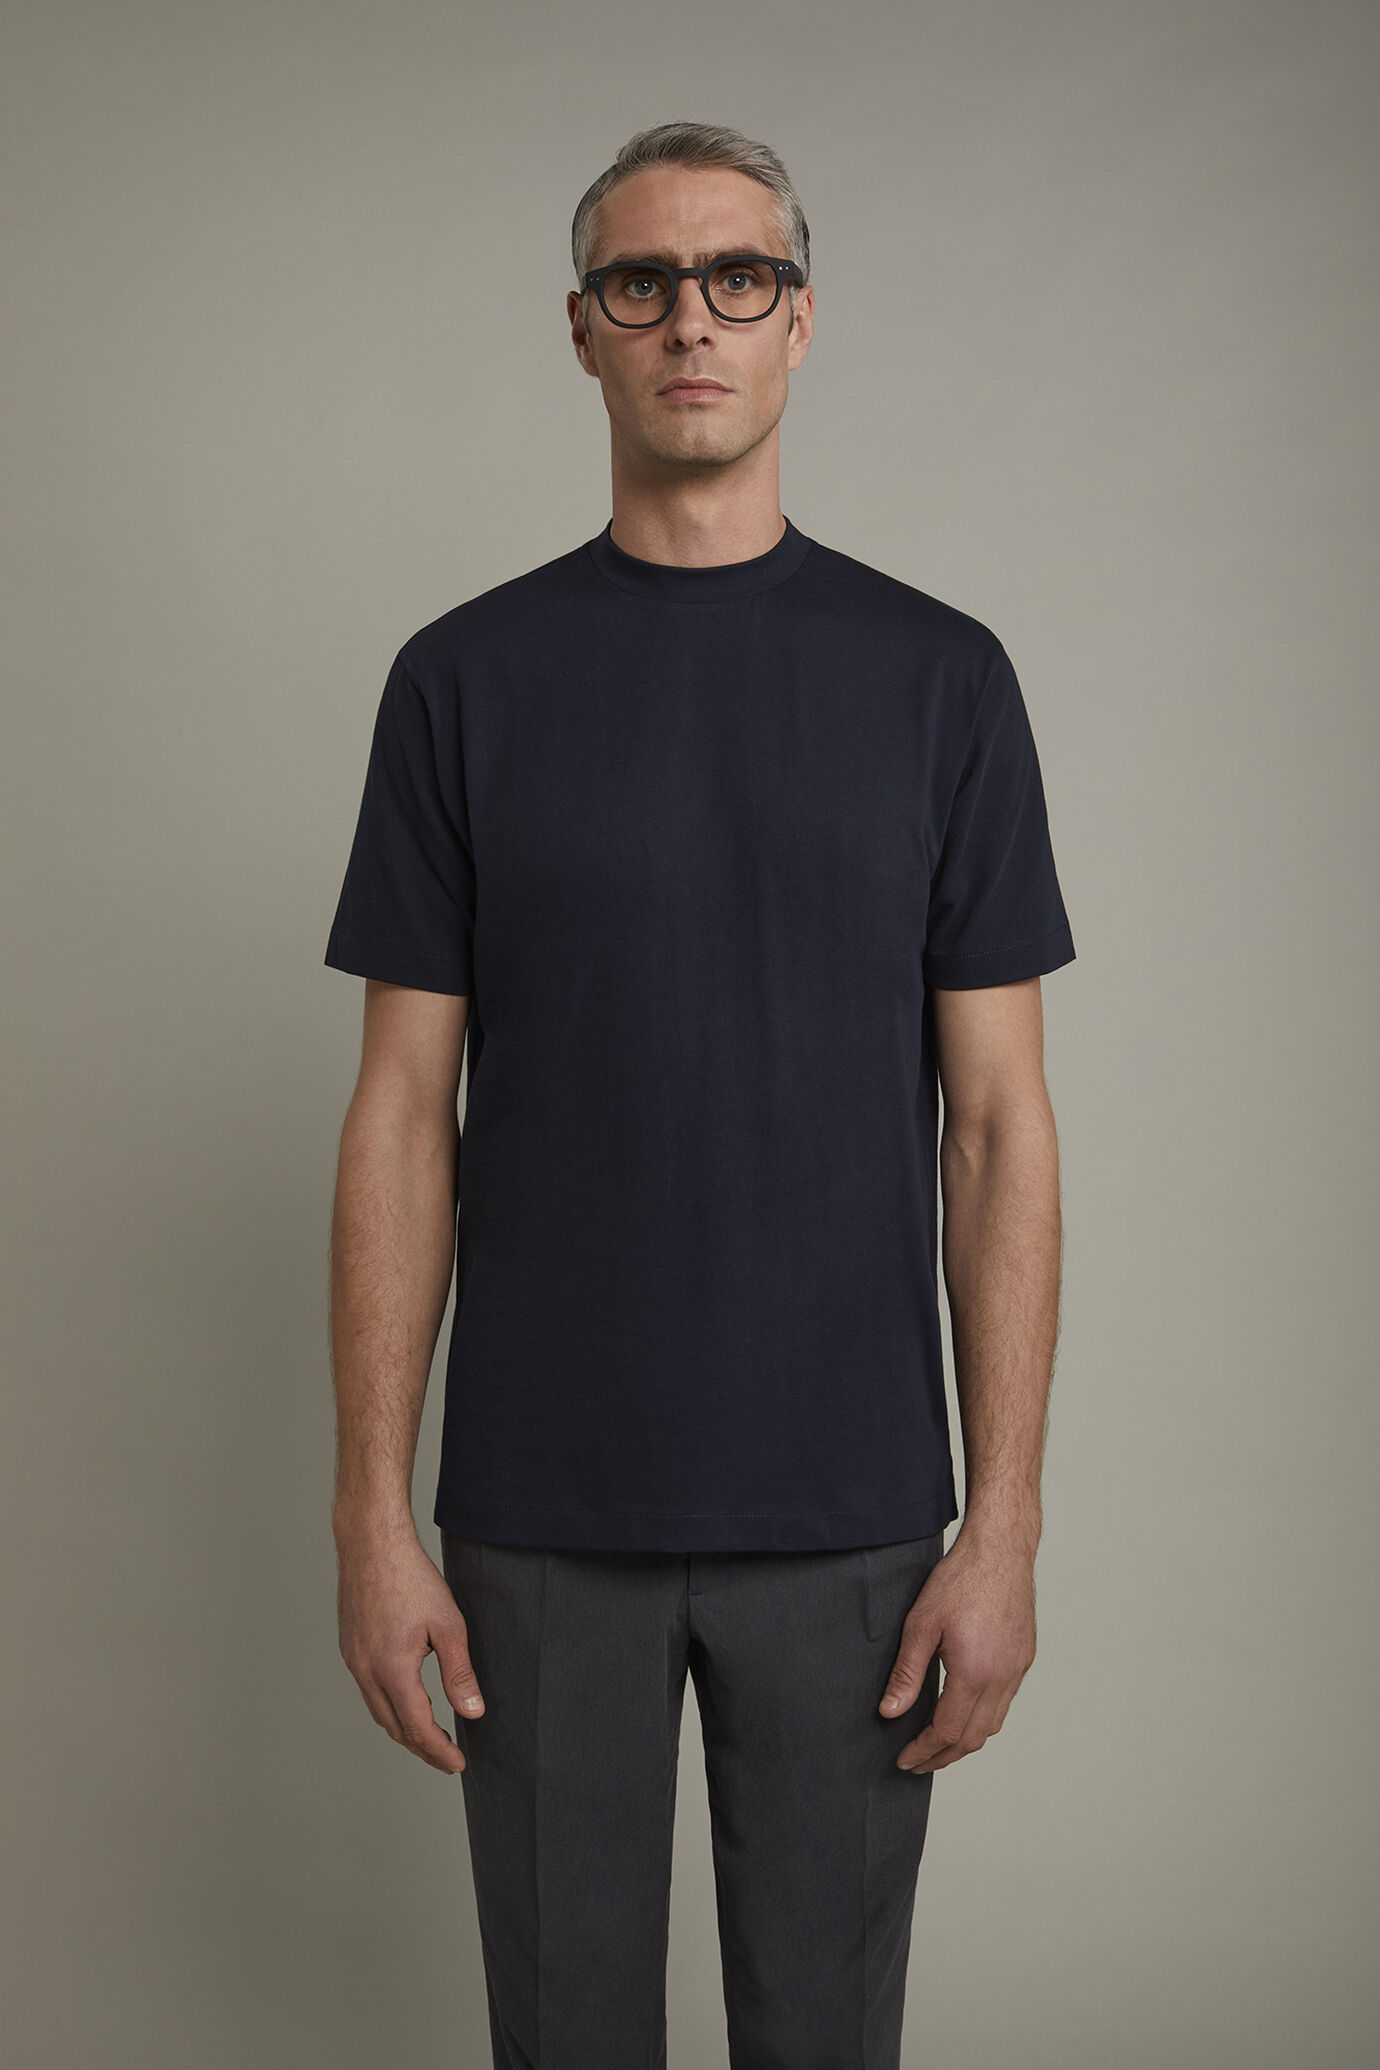 Herren-T-Shirt mit Rundhalsausschnitt aus 100 % Baumwolle in normaler Passform